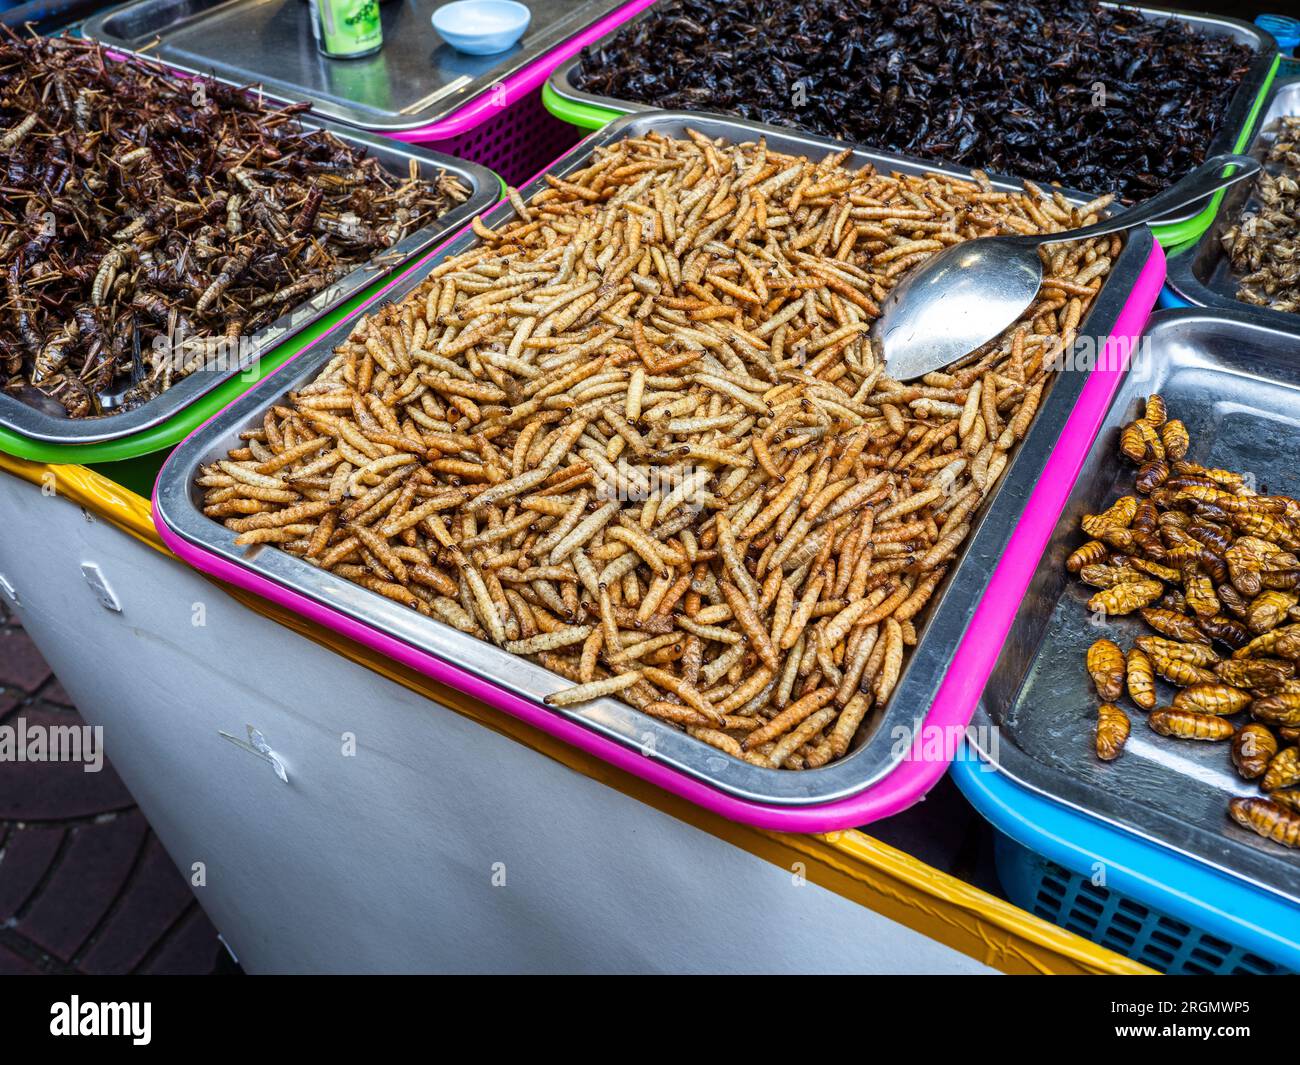 In un vivace mercato di strada a Bangkok, in Thailandia, troverai deliziose offerte di insetti e vermi commestibili. Foto Stock